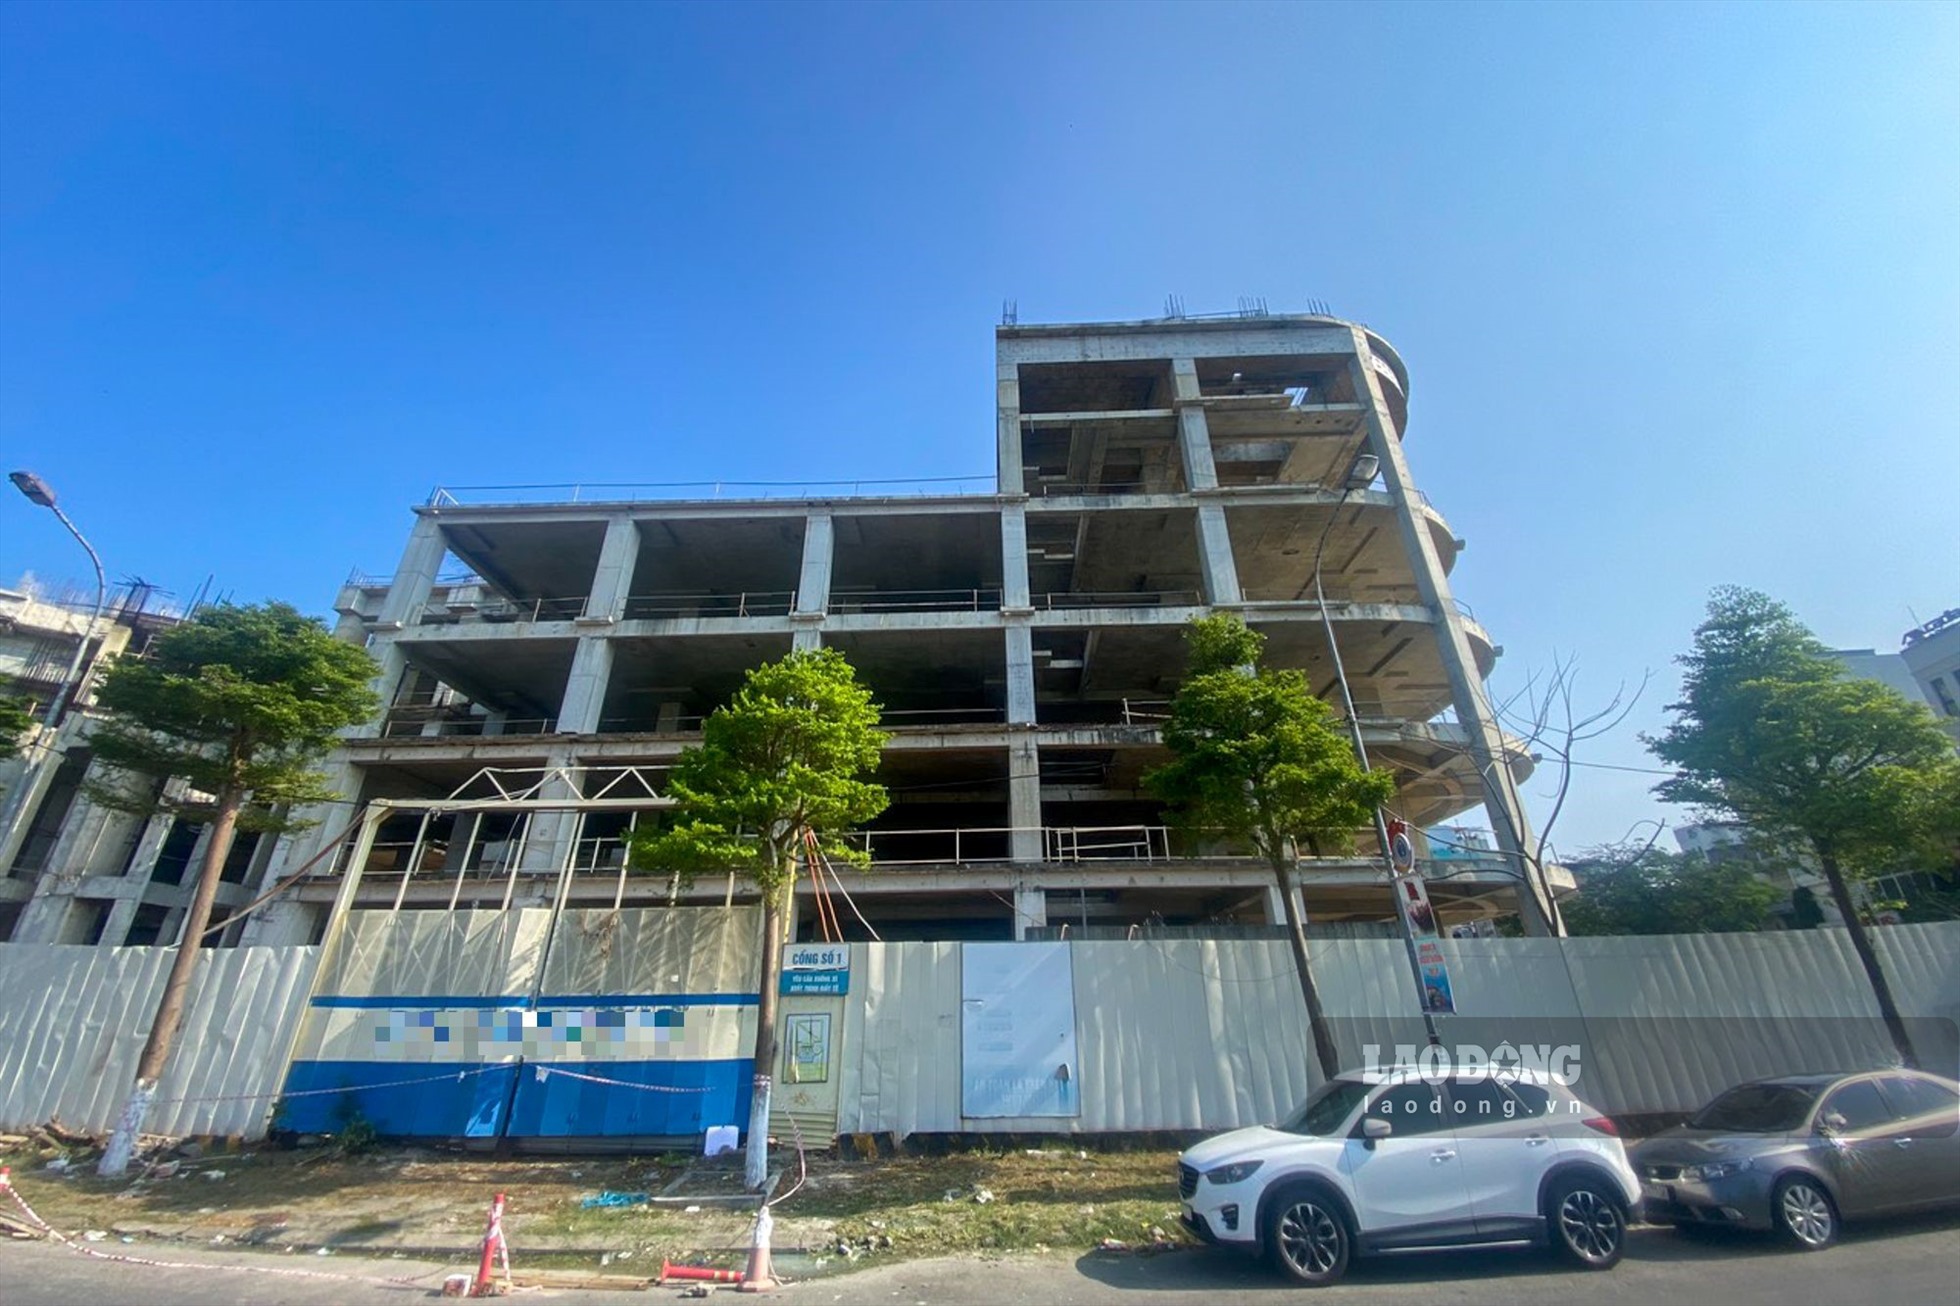 Cuối tháng 10/2022, UBND TP Đà Nẵng cũng đã ban hành công văn giao Sở Tài nguyên và Môi trường thành phố phối hợp với UBND quận Hải Châu và các đơn vị liên quan tiến hành rà soát, kiểm tra và kiến quyết thu hồi những dự án đã hết thời hạn sử đụng đất nhưng vẫn chưa hoàn thành đầu tư.